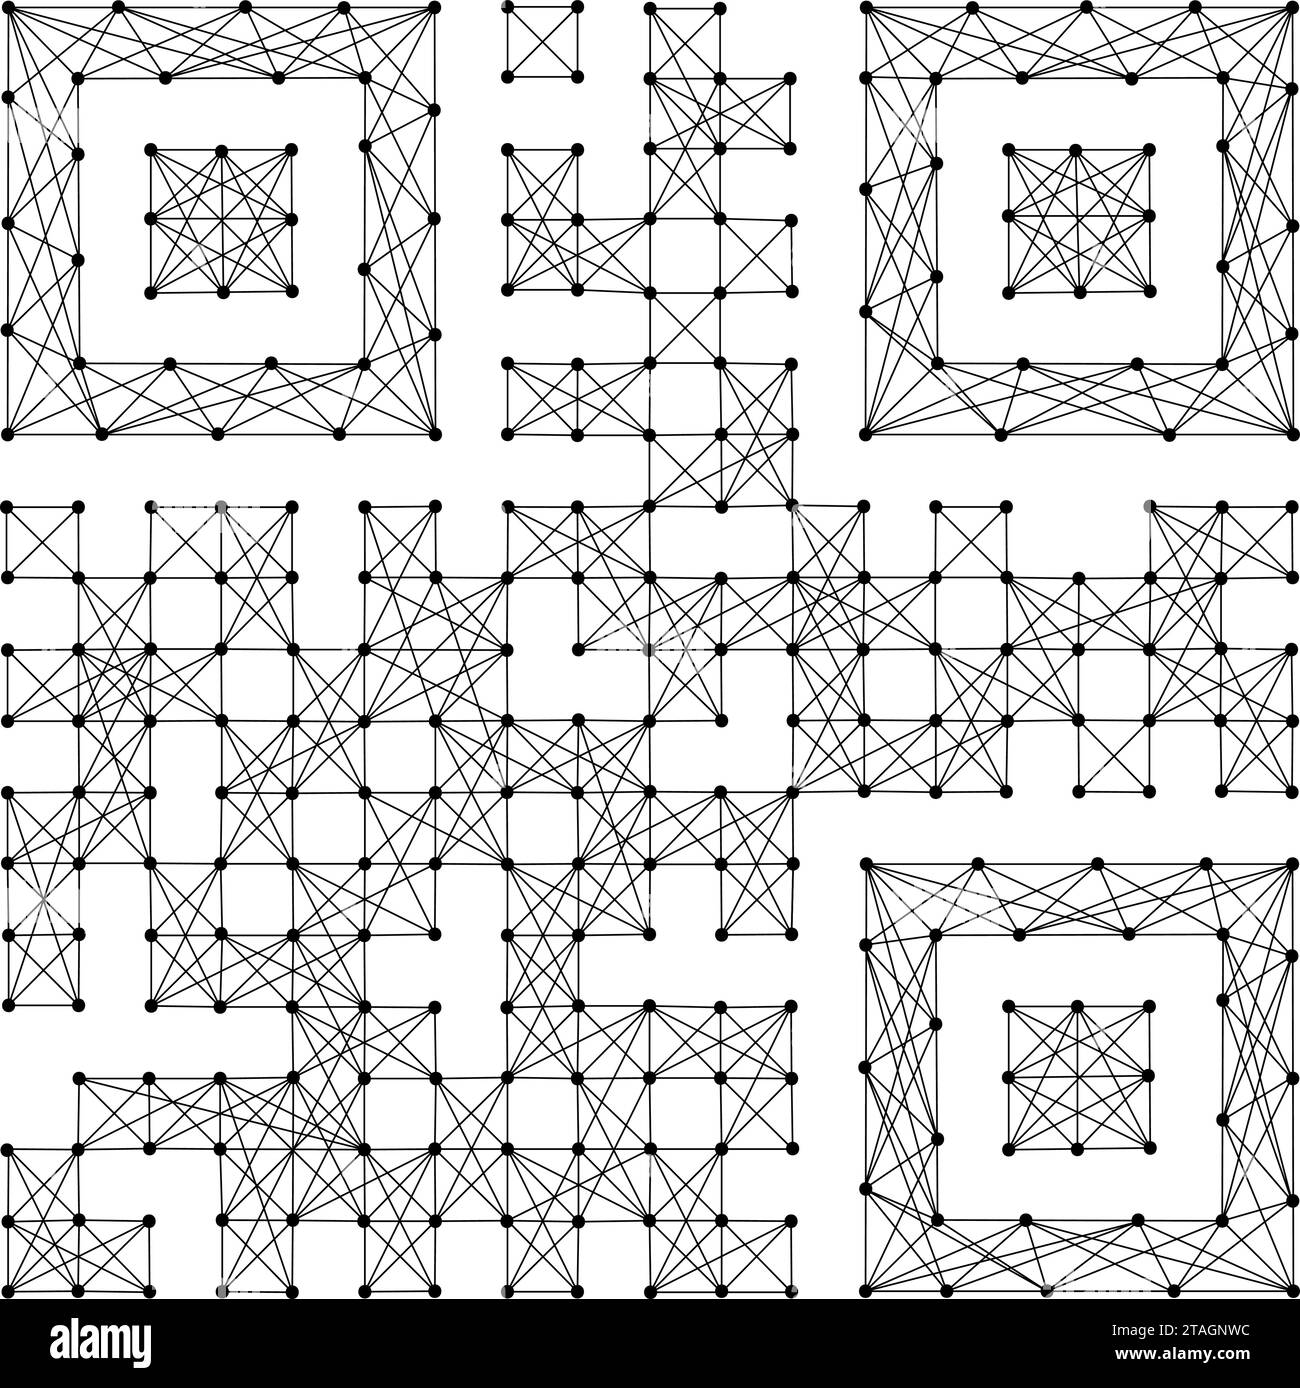 Codice QR arbitrario, icona da linee nere poligonali astratte futuristiche e punti. Illustrazione vettoriale. Illustrazione Vettoriale